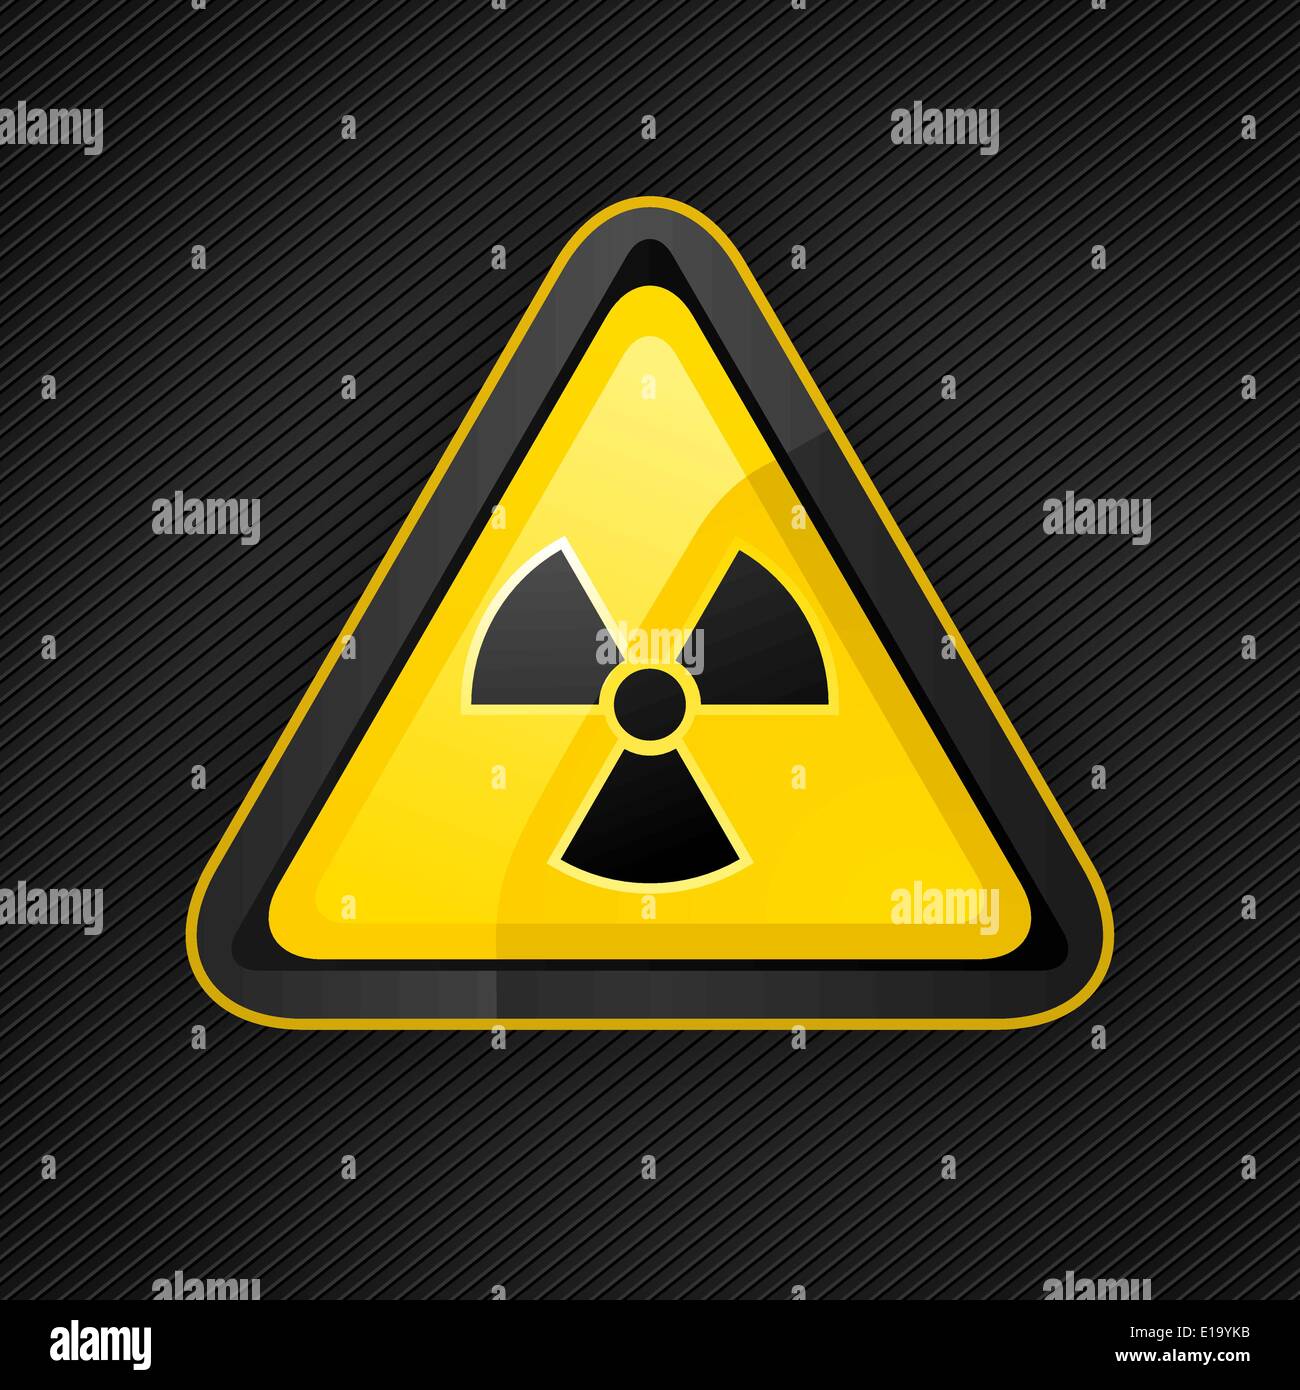 Warndreieck in der radioaktiven Gefahr melden auf einer Metalloberfläche, 10eps Stock Vektor